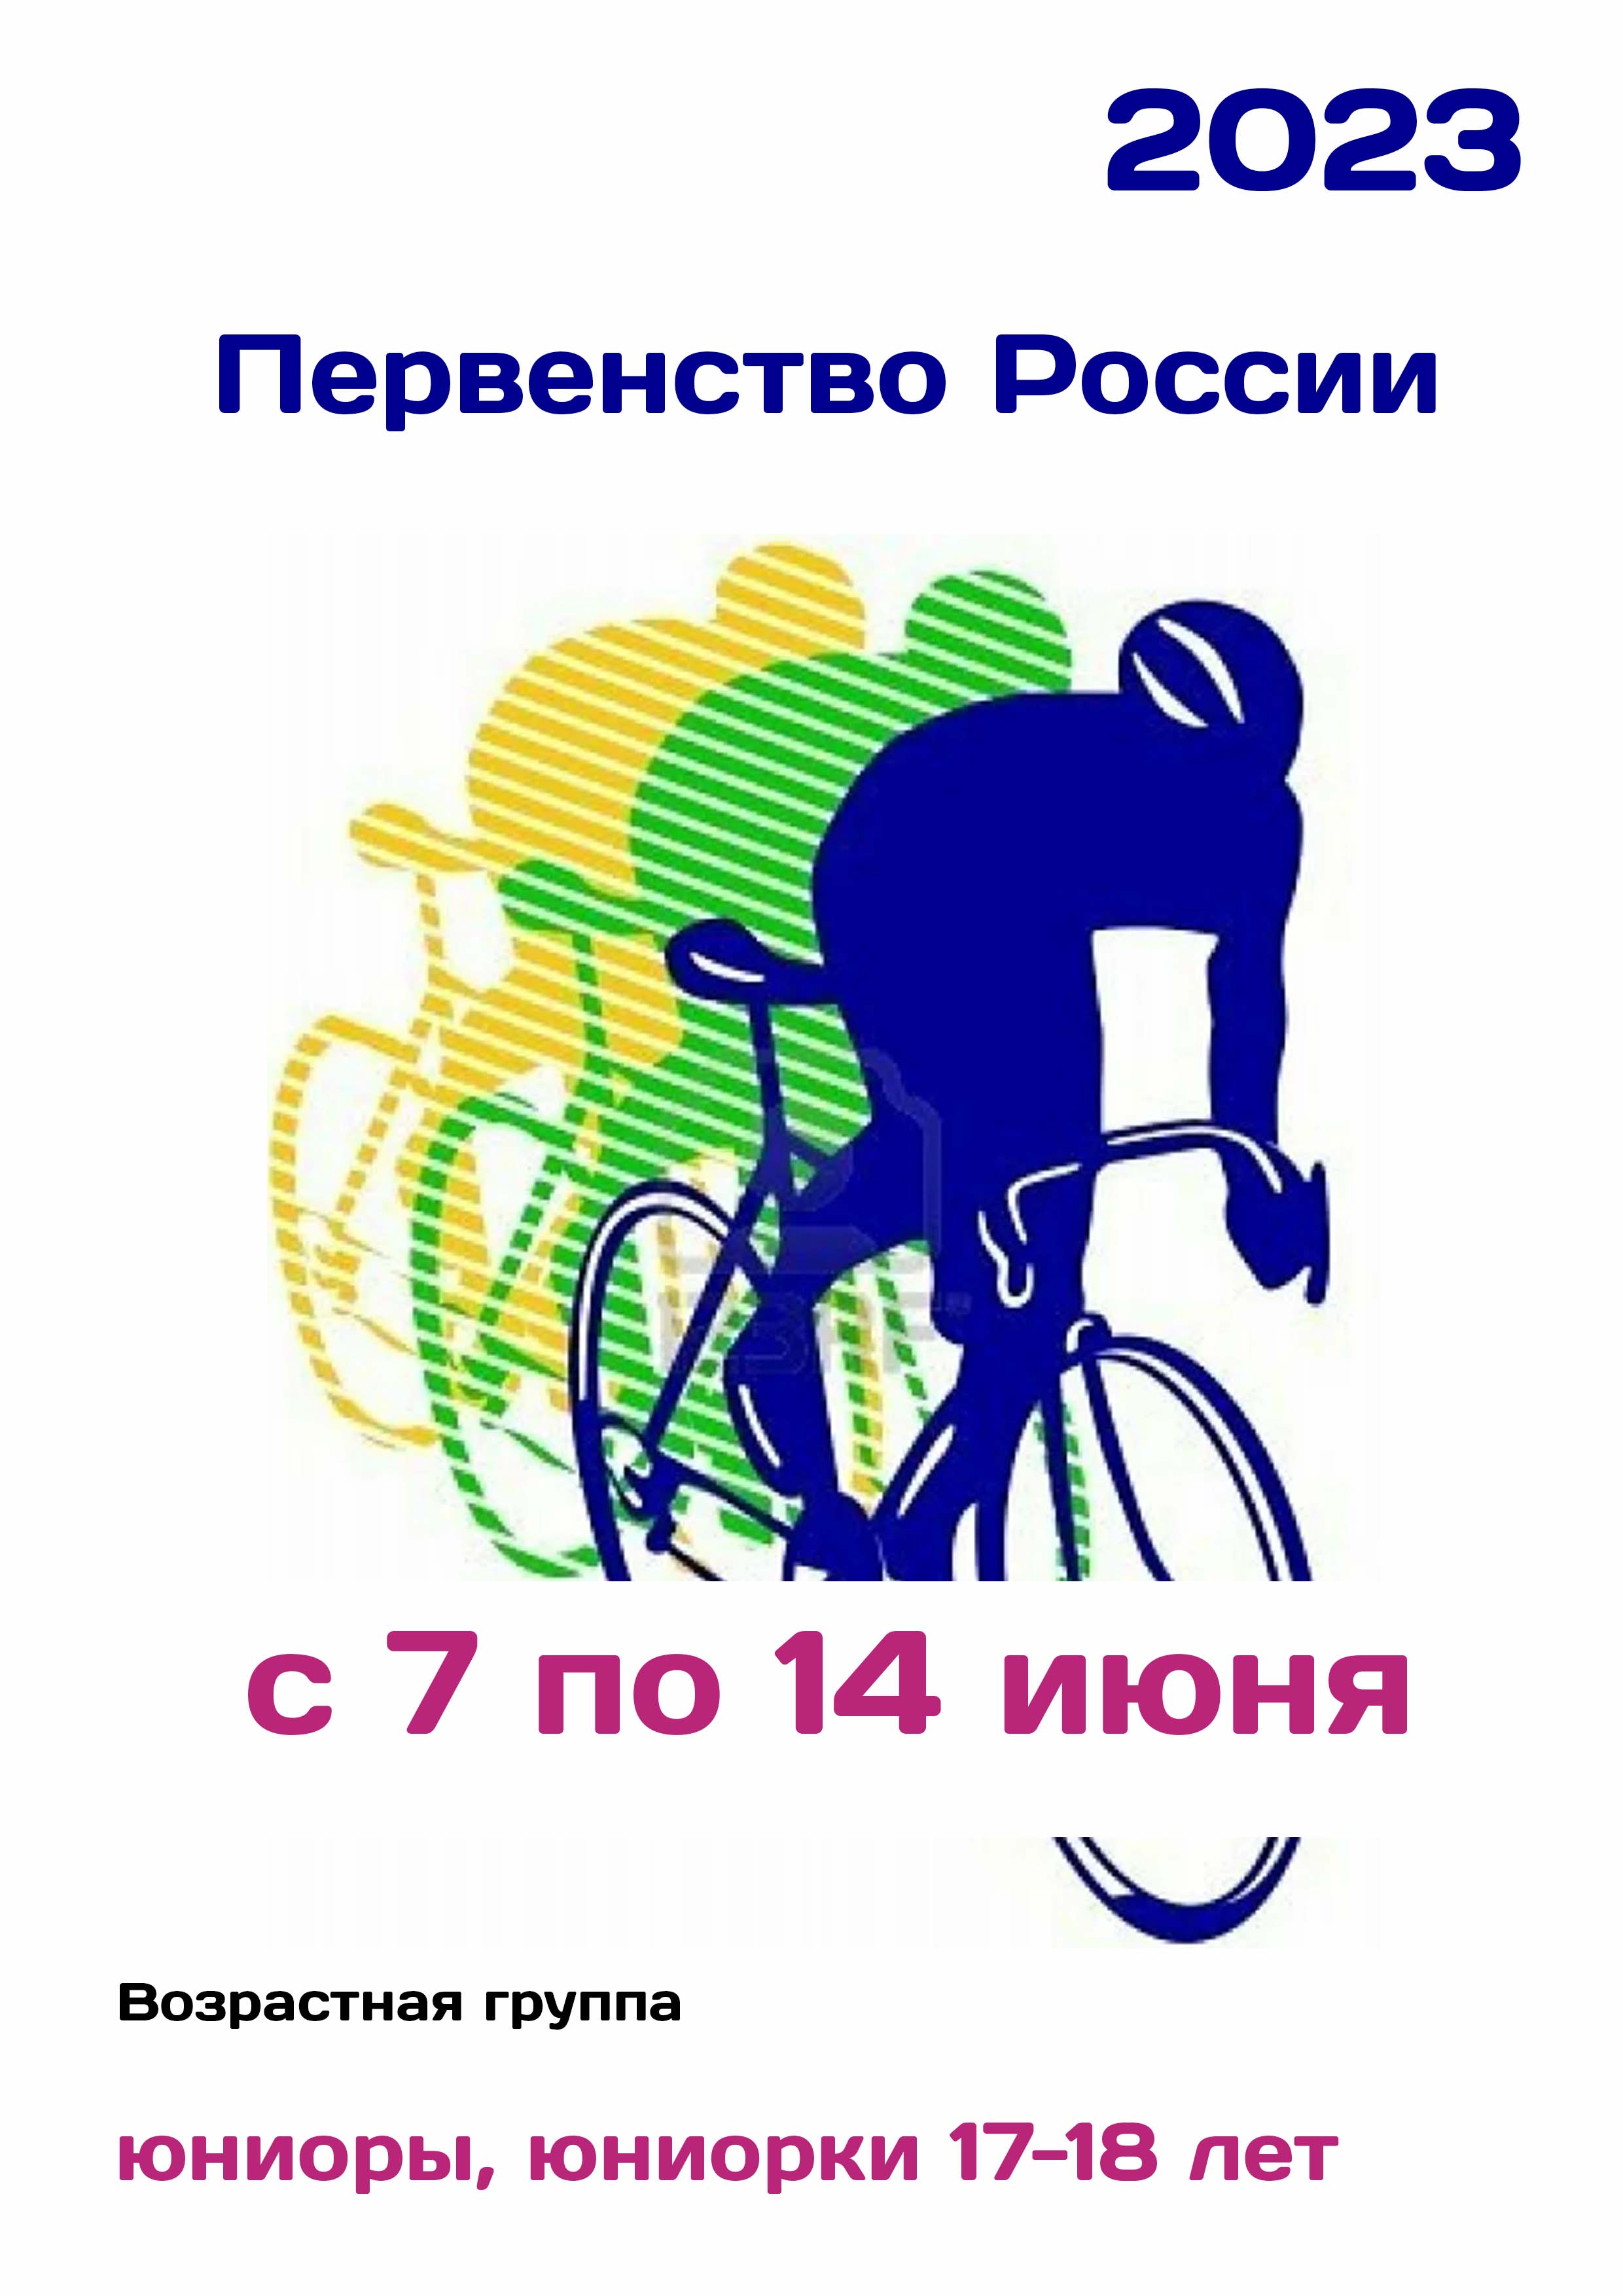 Первенство России по велоспорту 7  Juni  s
 2023  jaar
 